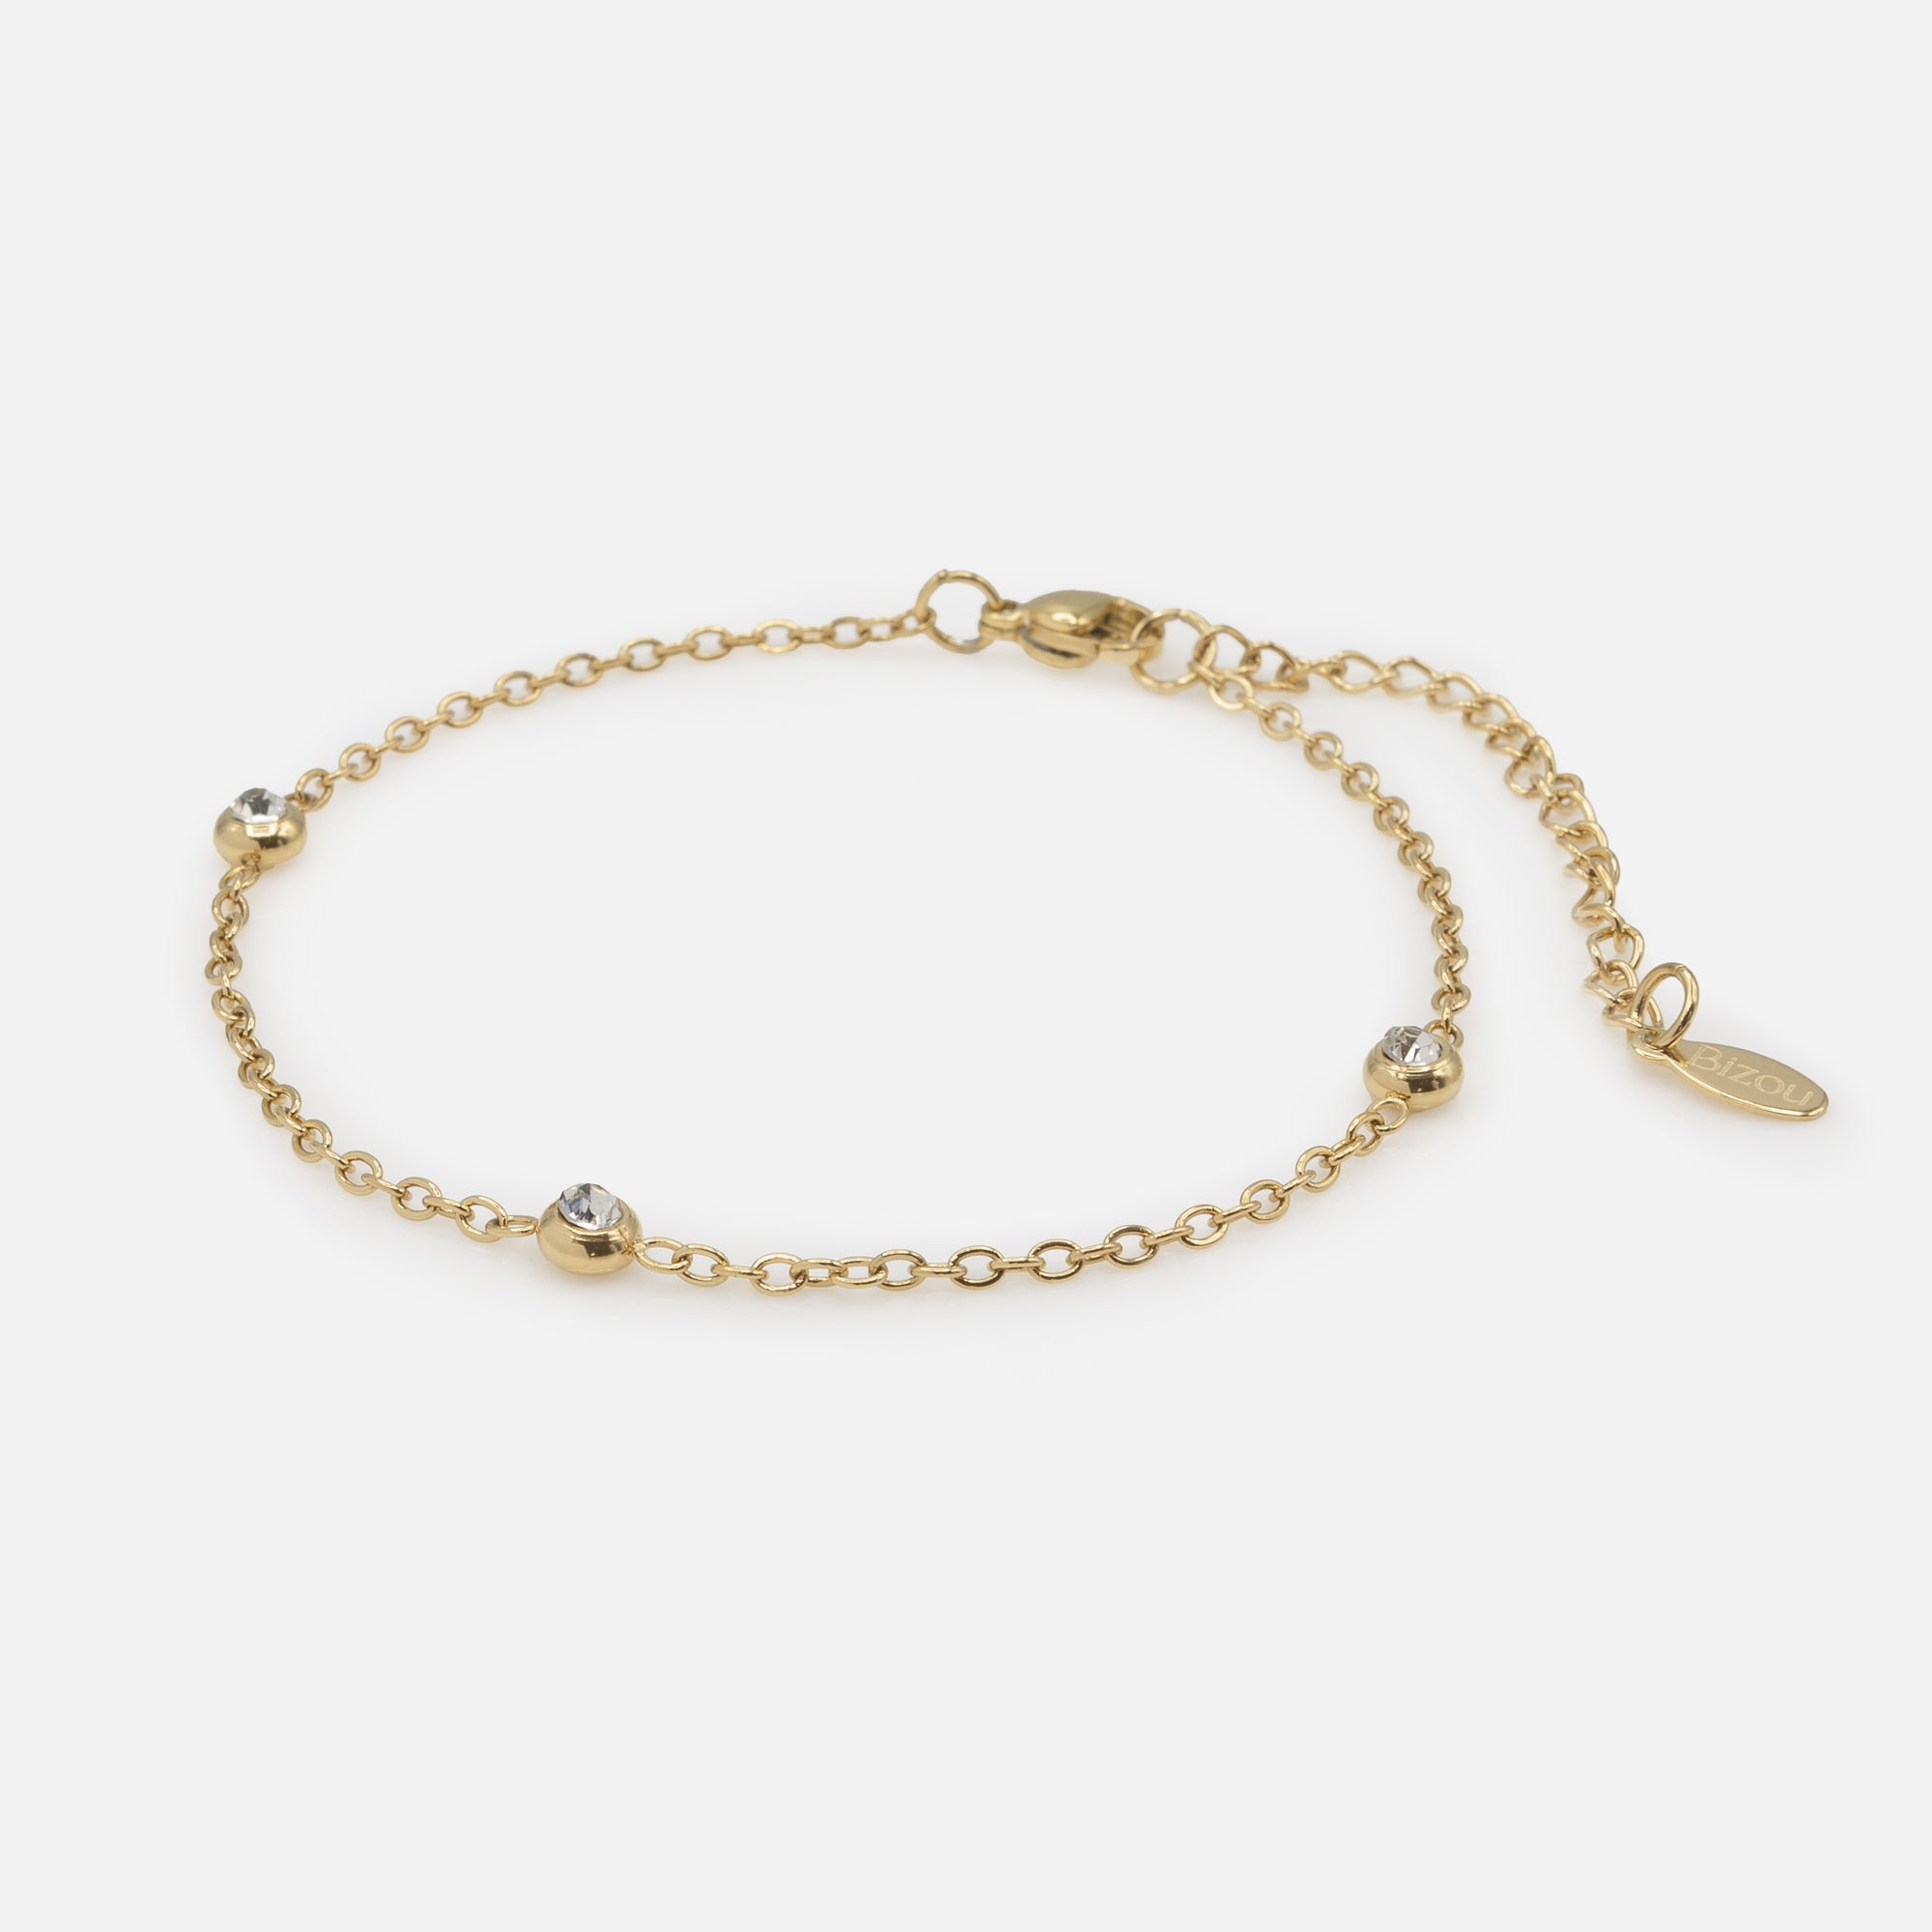 Golden bracelet trio of cubic zirconias in stainless steel